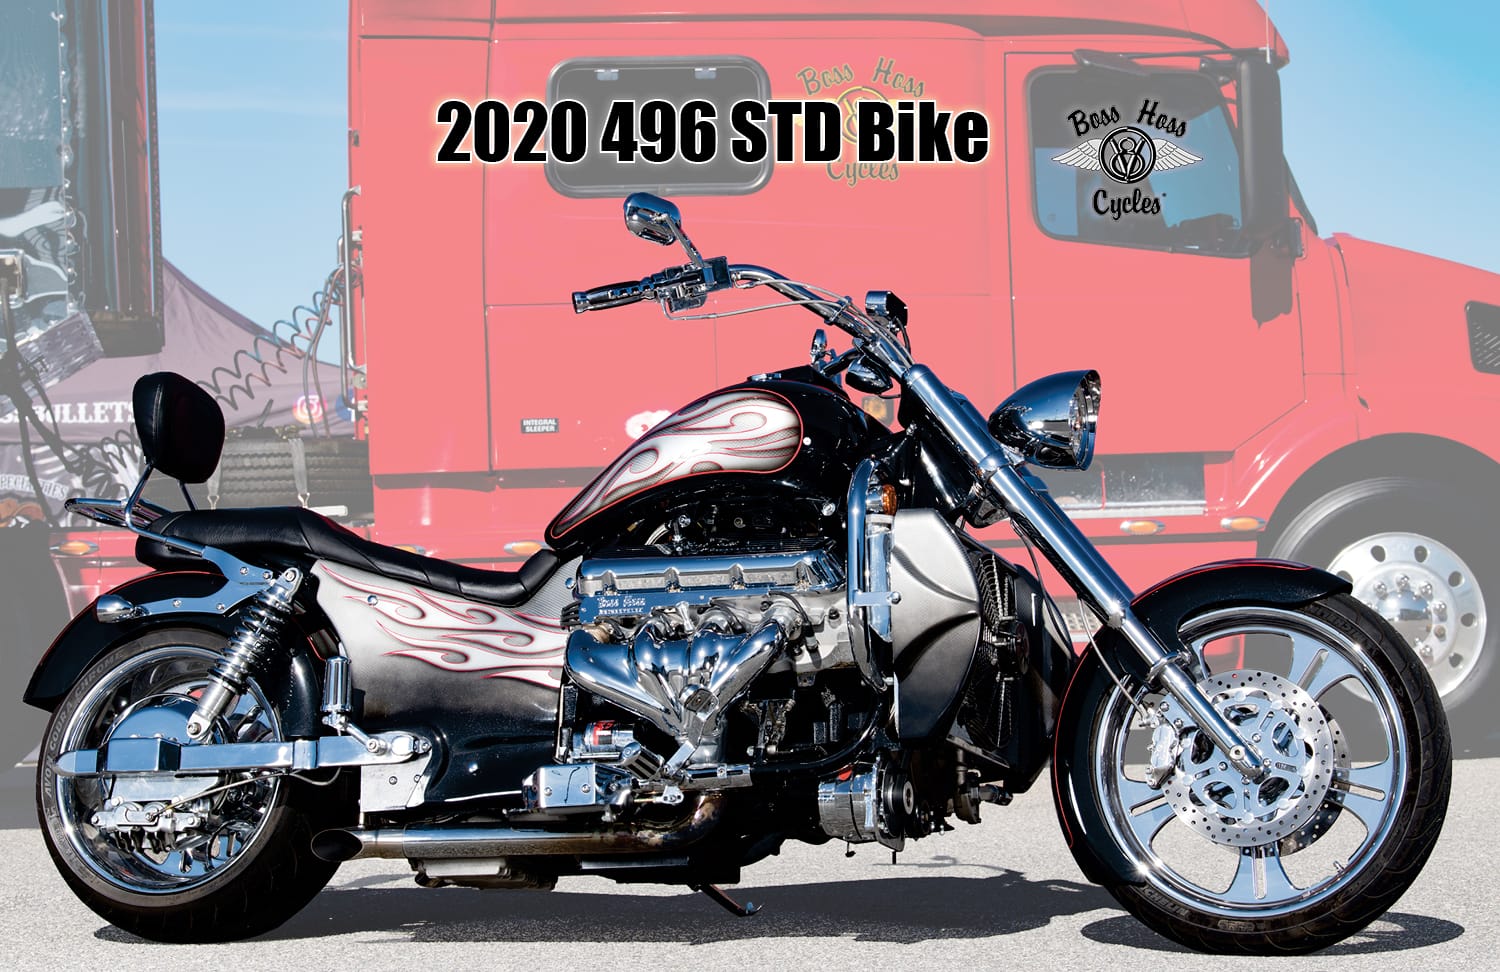 2020 496 STD Bike